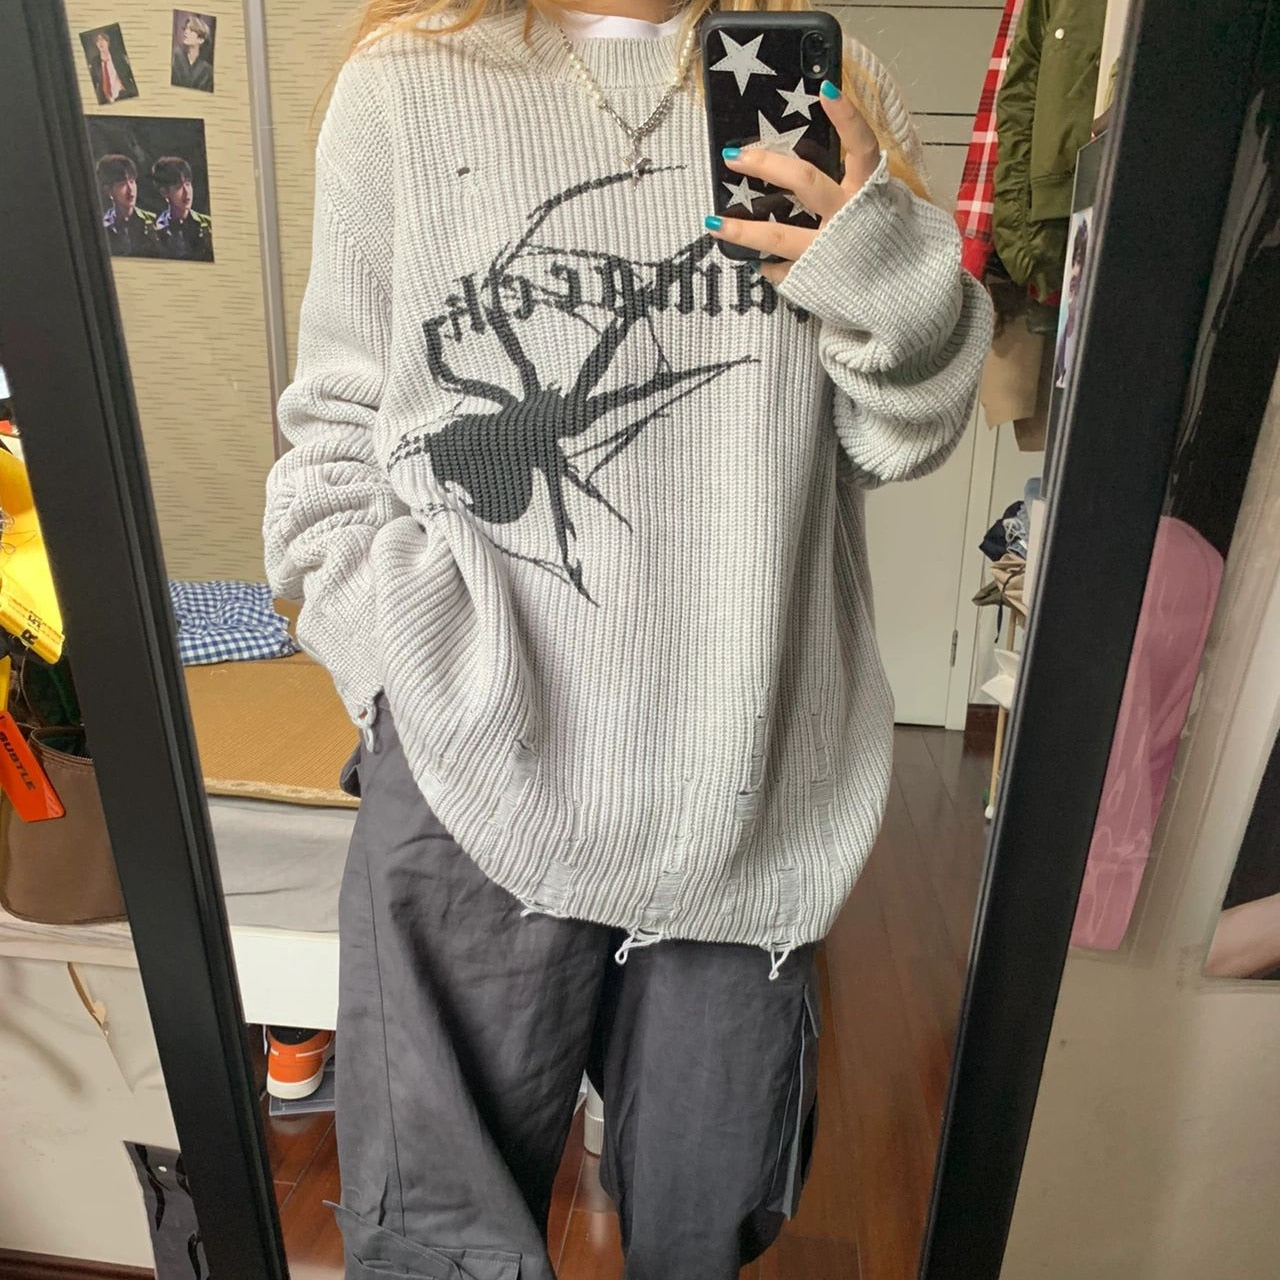 Spider sweater